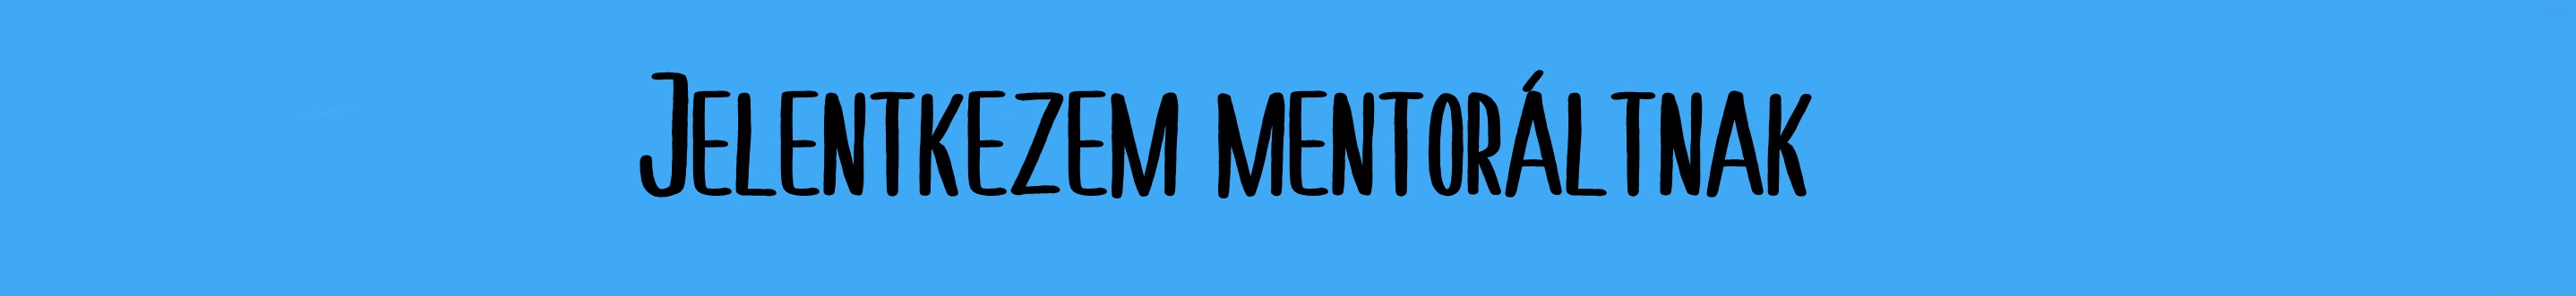 mentorált jel_1